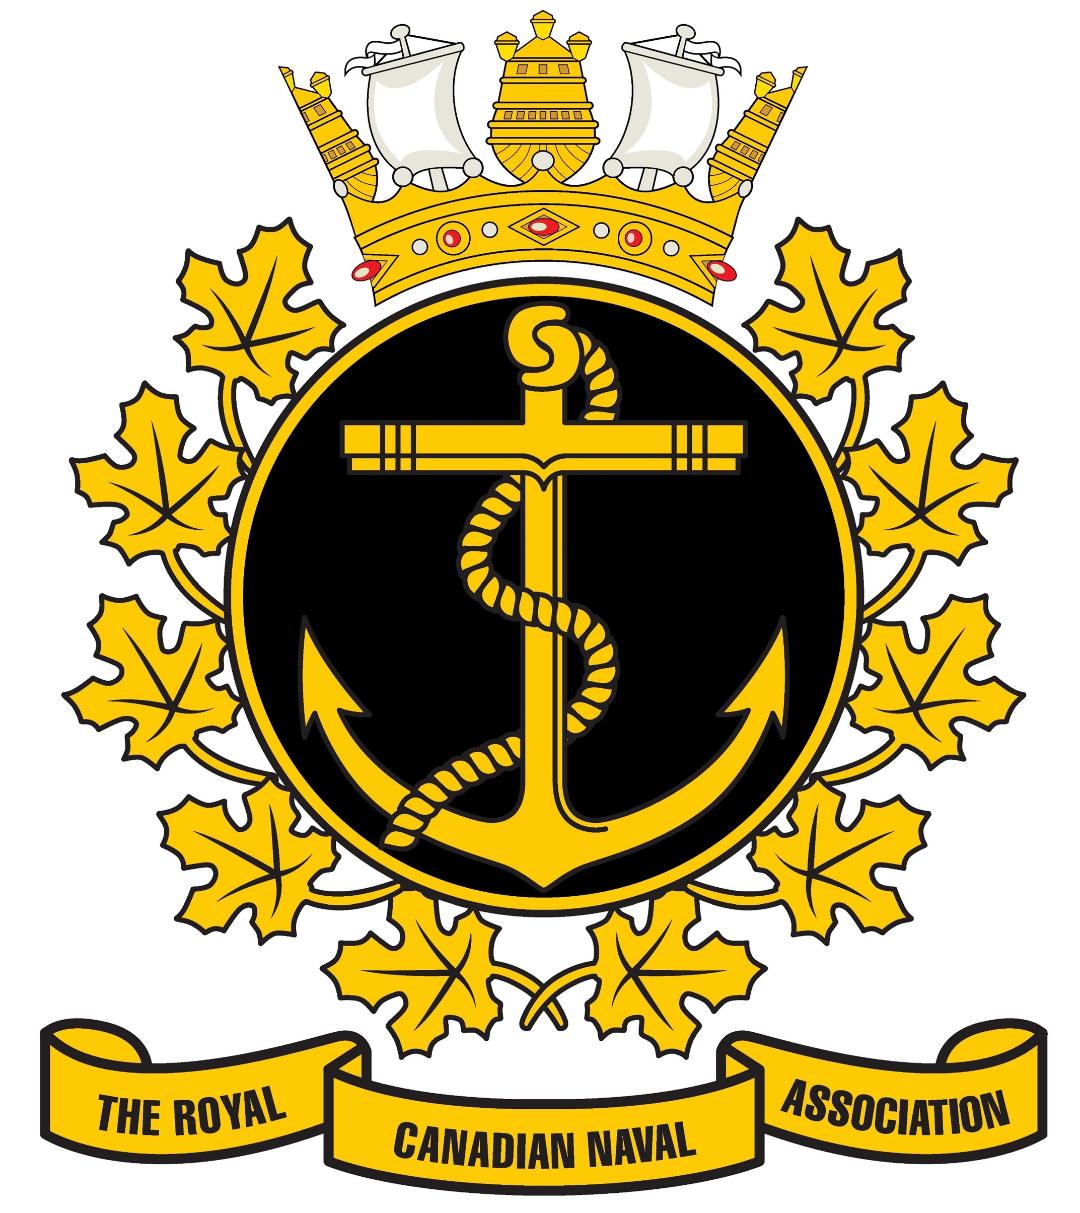 Association royale canadienne de la marine